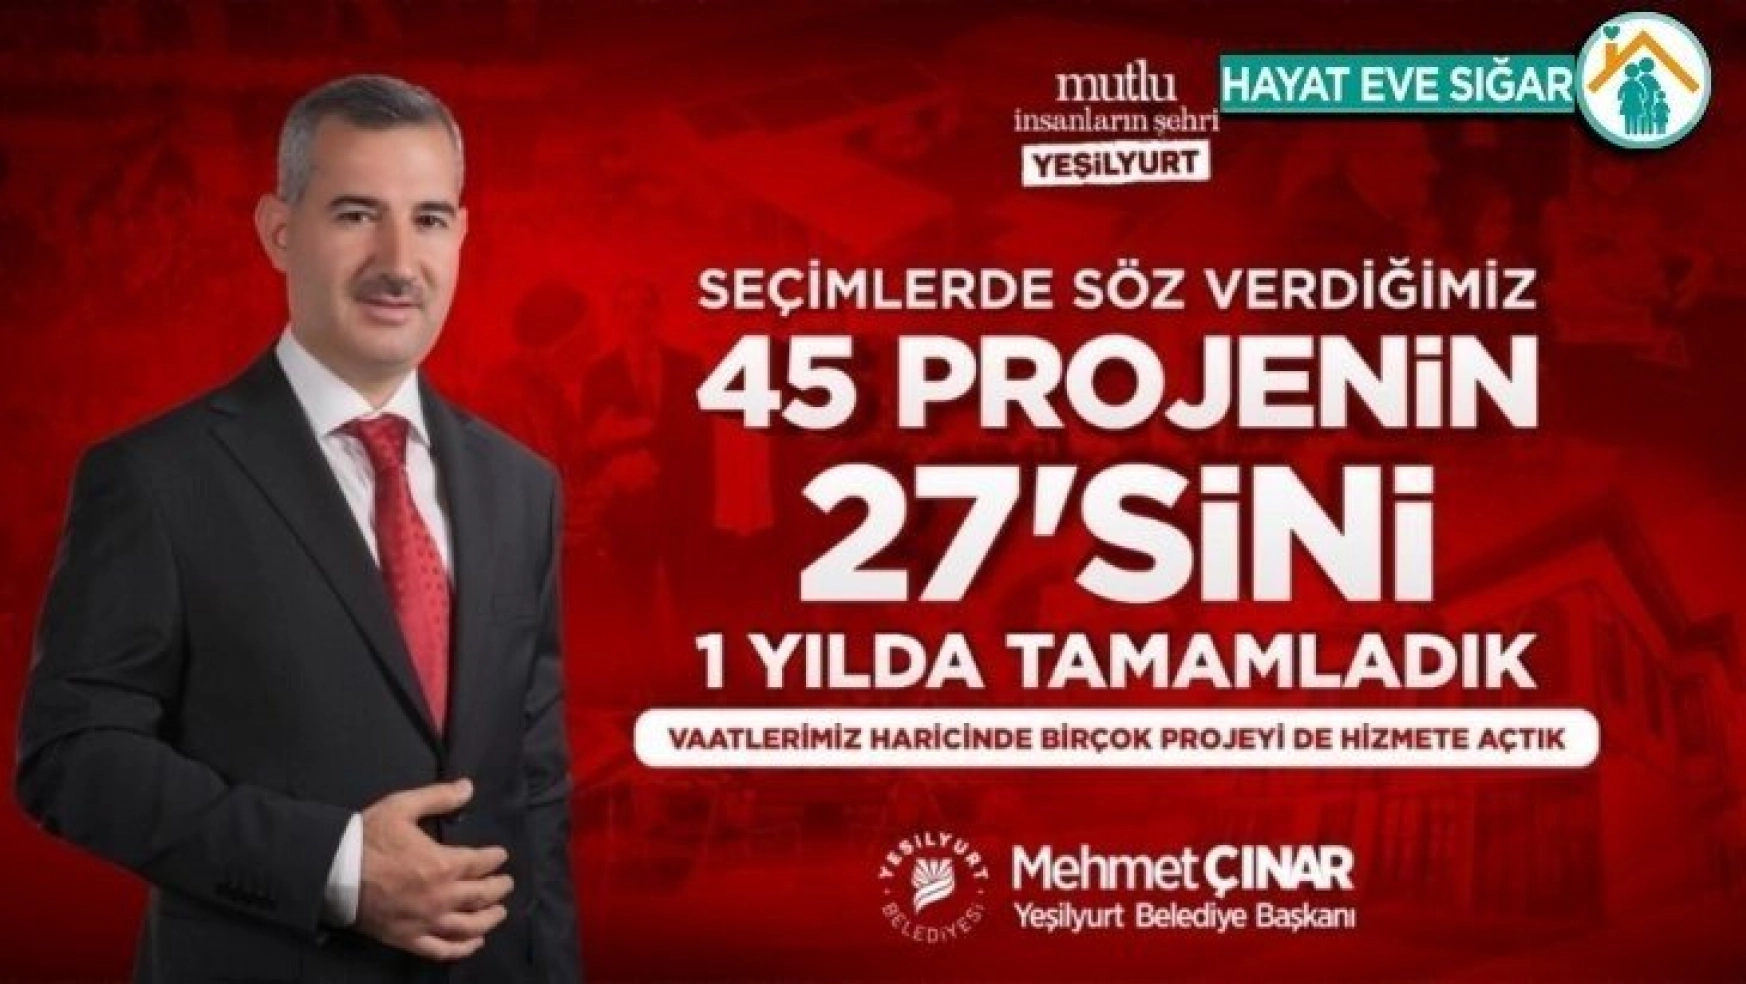 Başkan Çınar 45 projeden 27'sini bir yılda yaptıklarını bildirdi